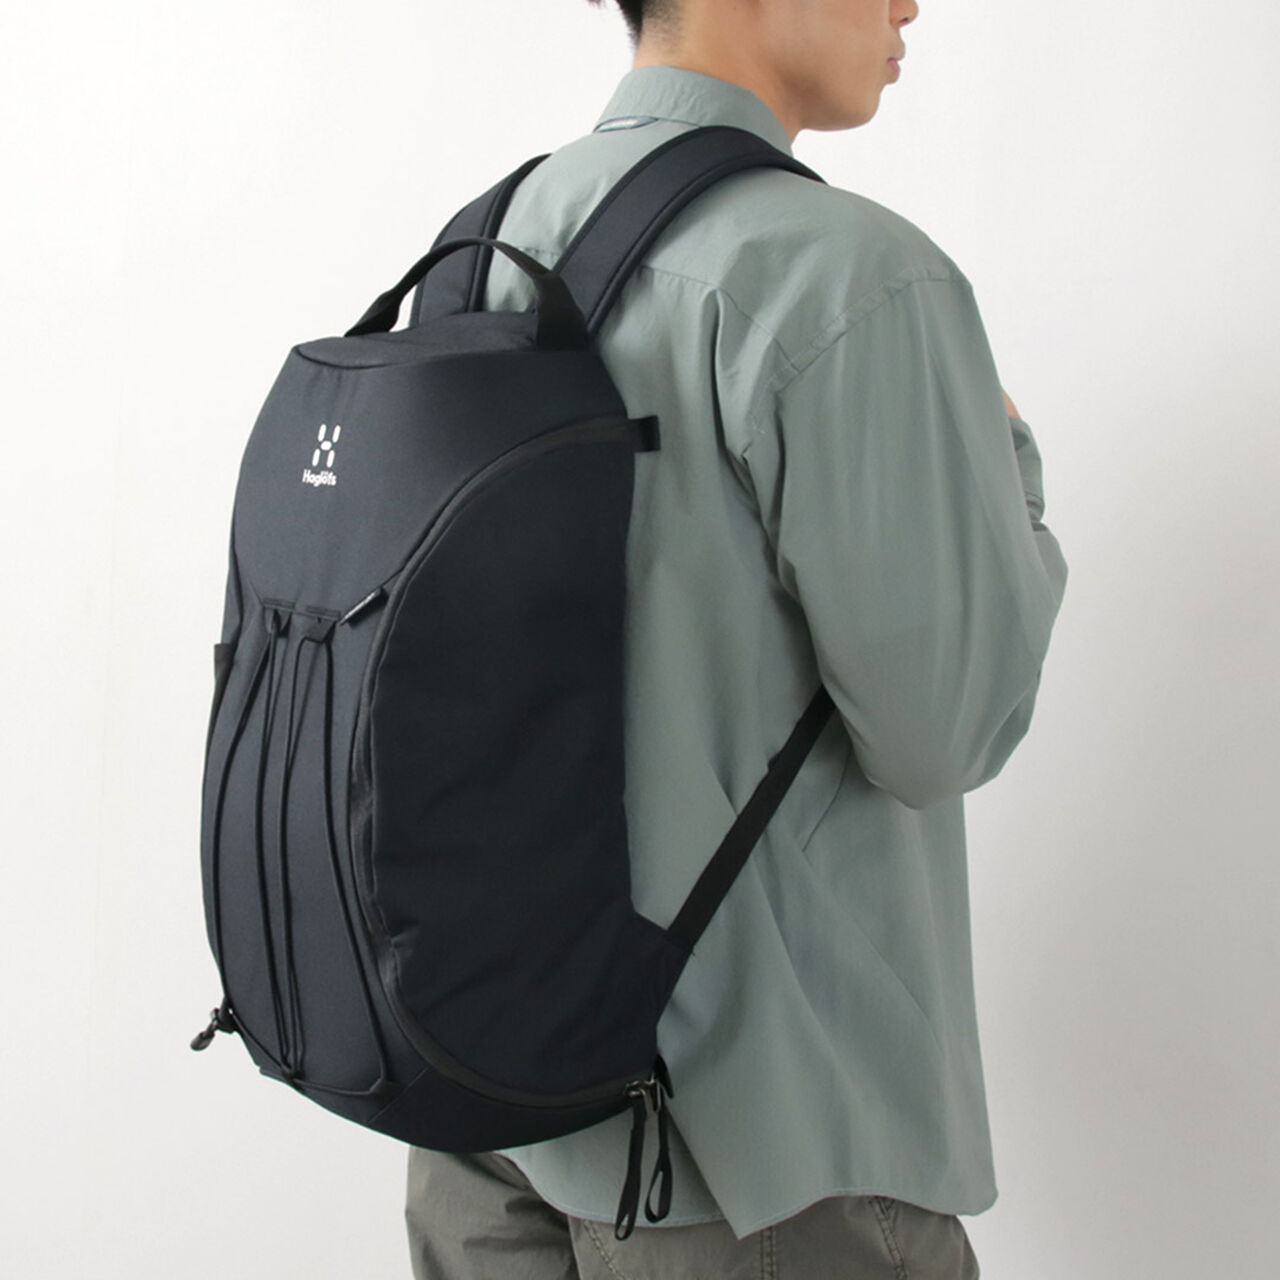 Corker 20 backpack,, large image number 3